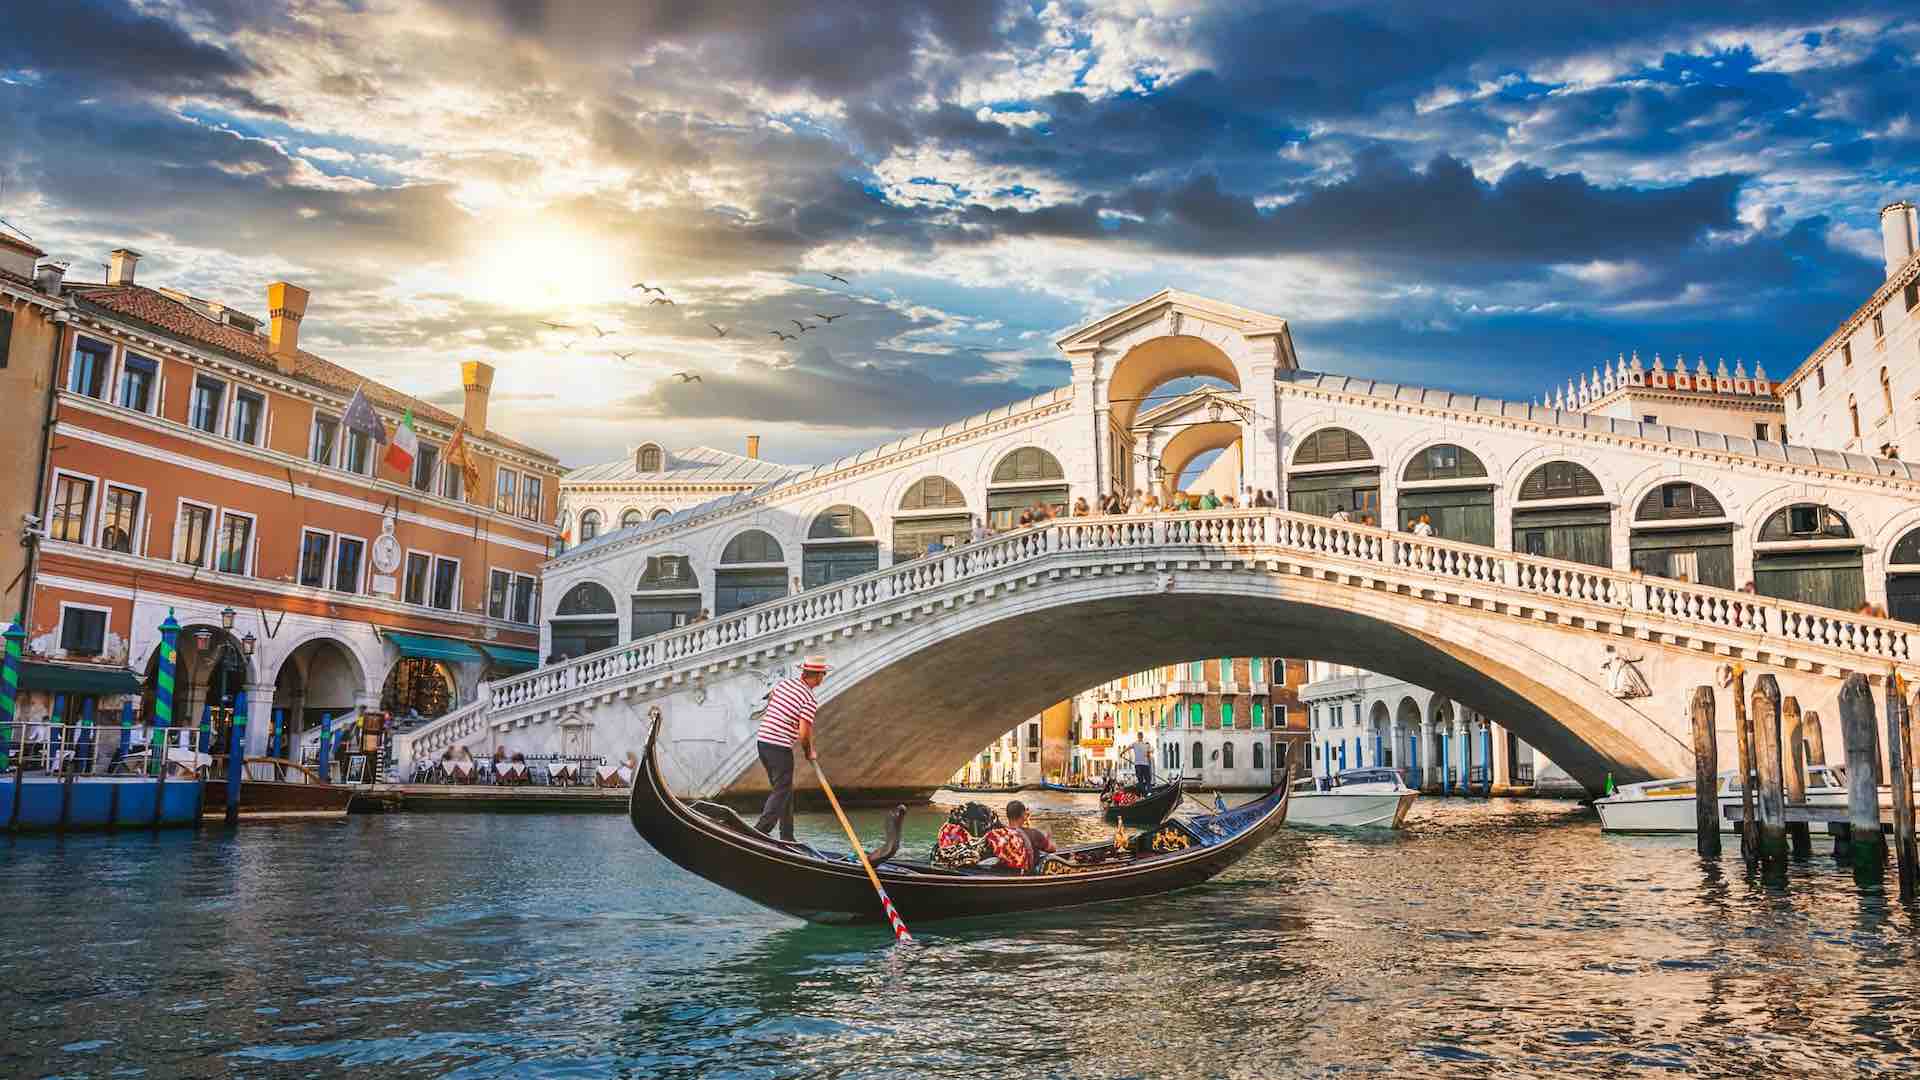 Venedik gelecek yıldan itibaren günübirlik ziyaretçilerden 5 Euro ücret alacak